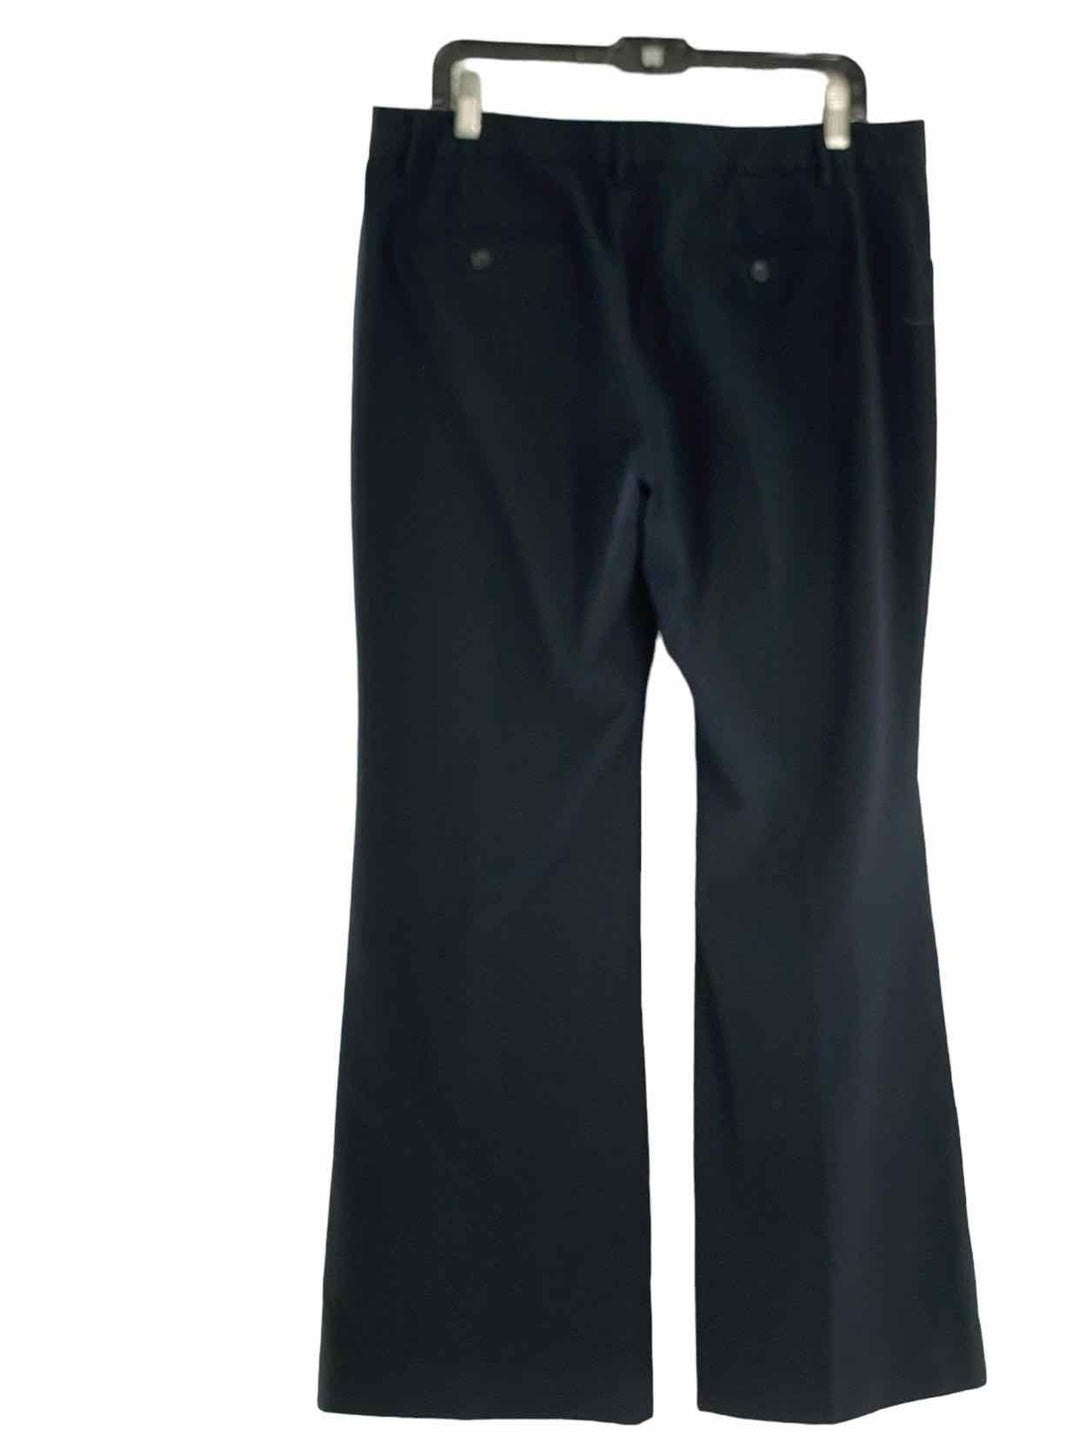 Gap Size 14R Navy Pinstripe Pants